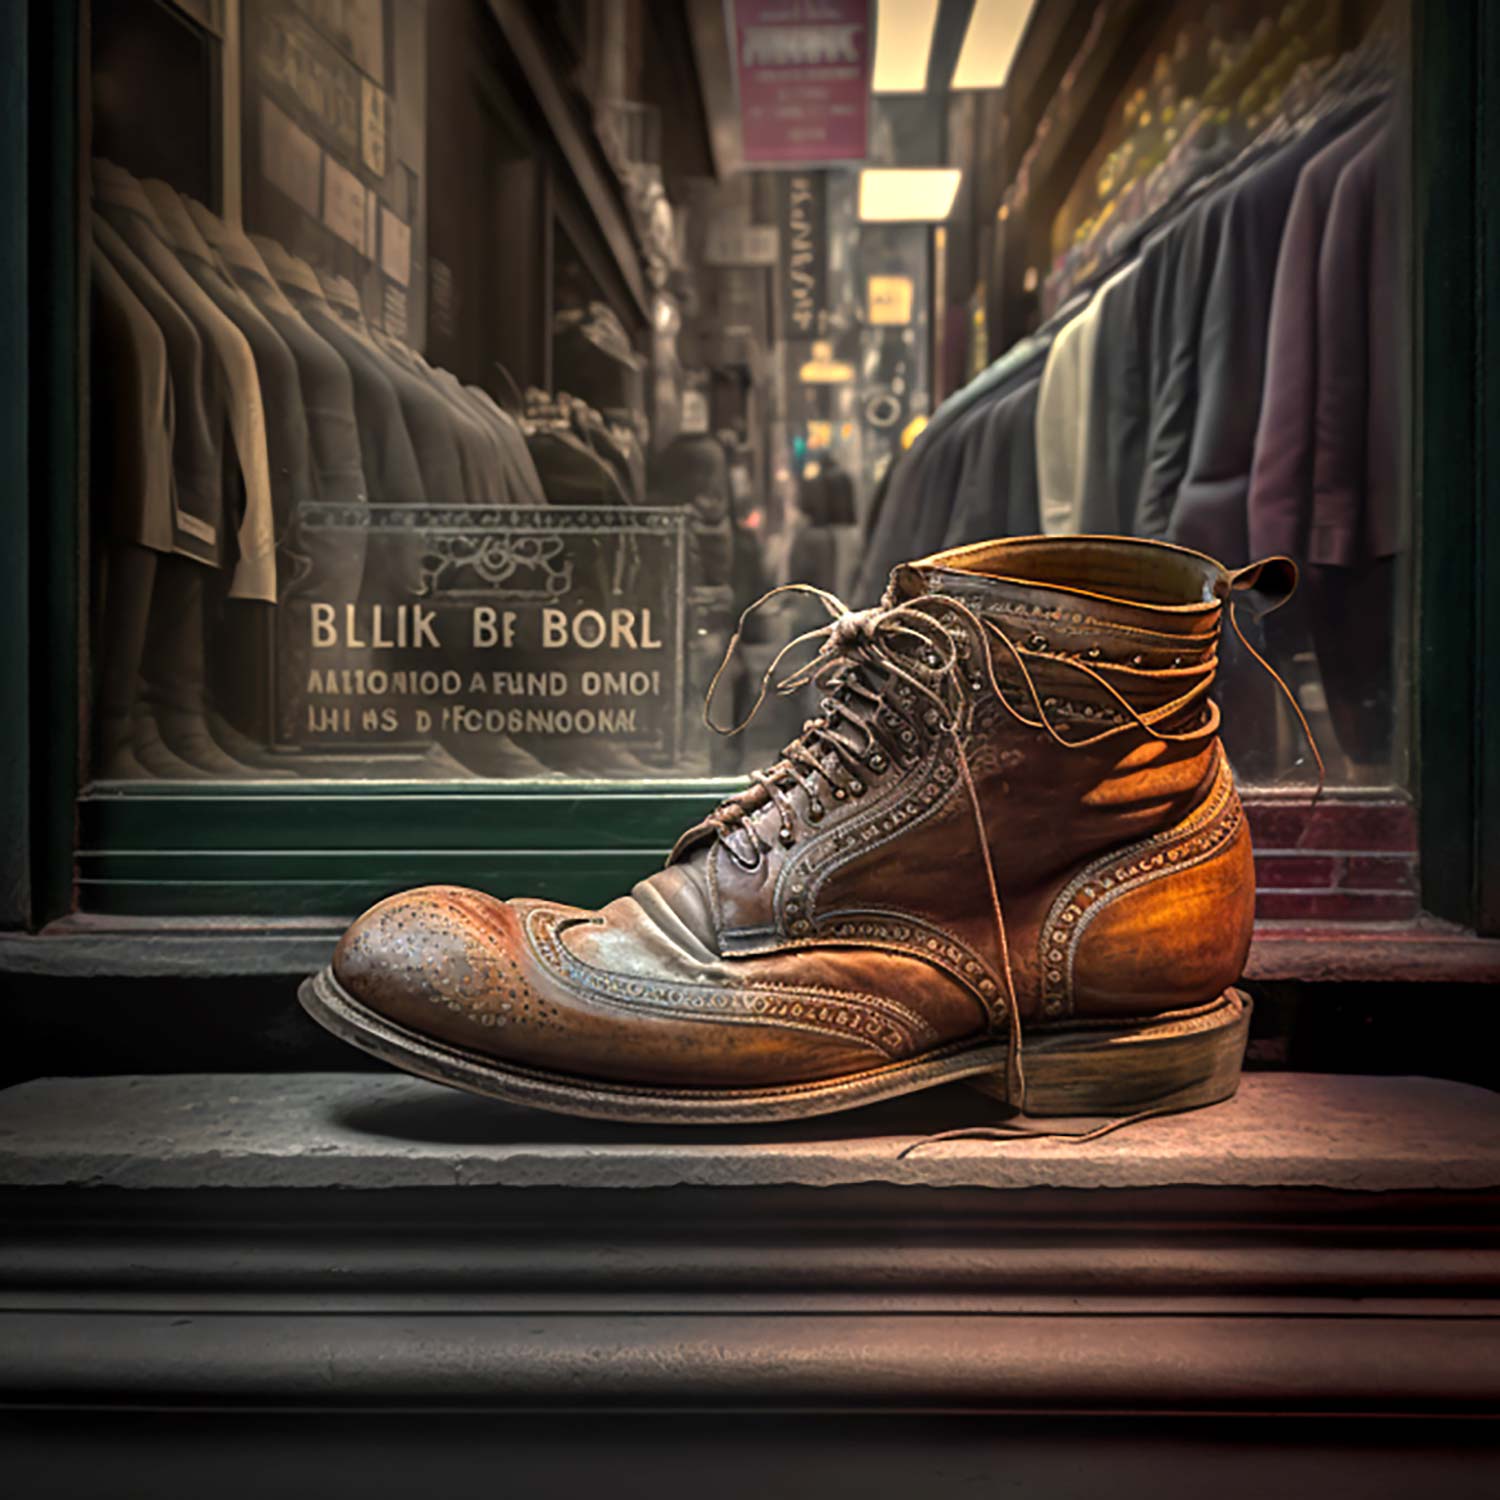 Dieses Bild zeigt eine Illustration eines Ralph Lauren Männer Schuh.